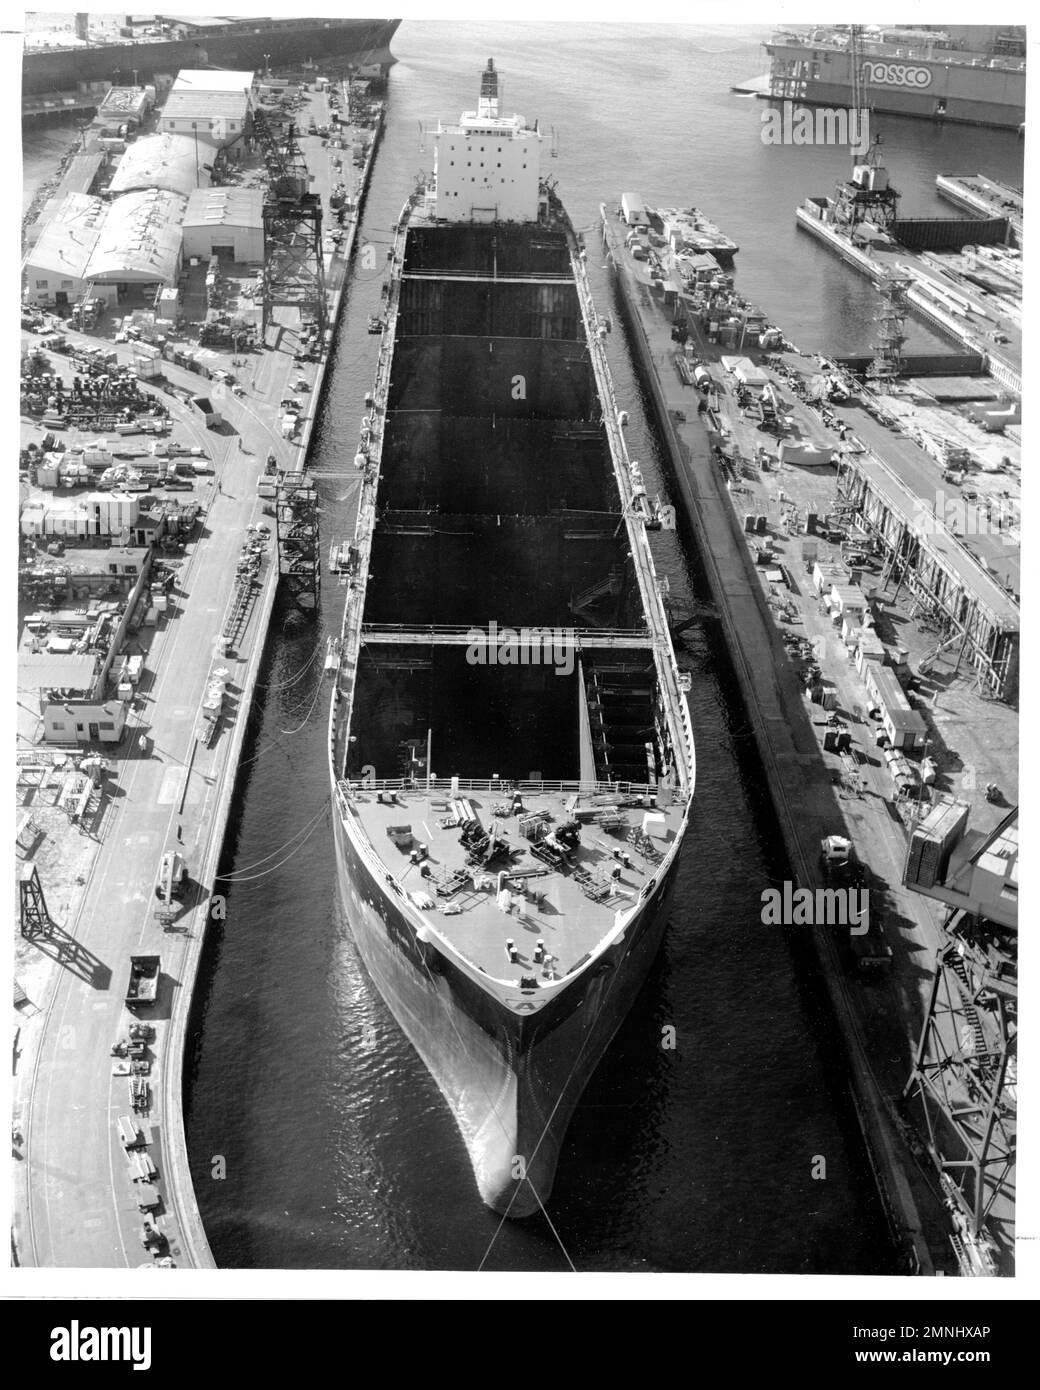 Dans un quai à grader de la National Steel and Shipbuilding Company, San Diego, le supertanker SS Worth subit une conversion en USNS Mercy (T-AH 19), le plus récent navire-hôpital de la Marine ca. fin 1970s Banque D'Images